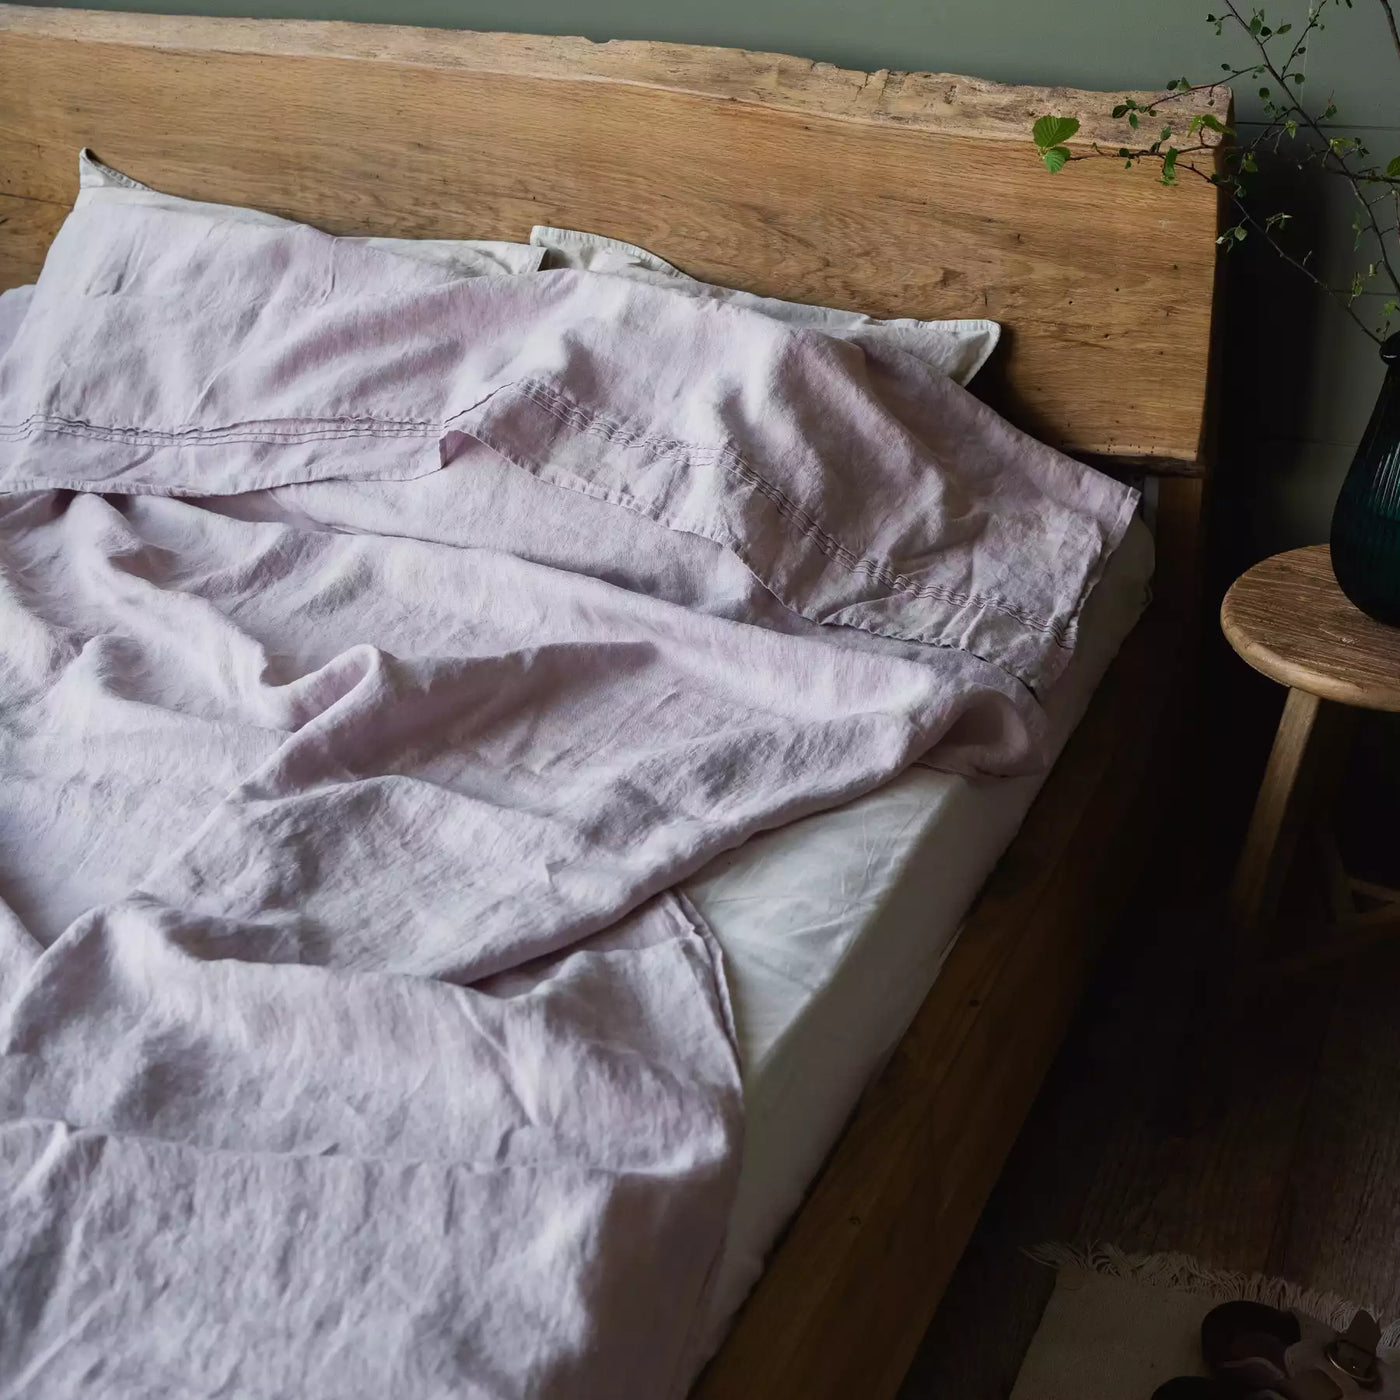 Juego de cama de lino con sábana plana 240x270 en Rosa Cuarzo